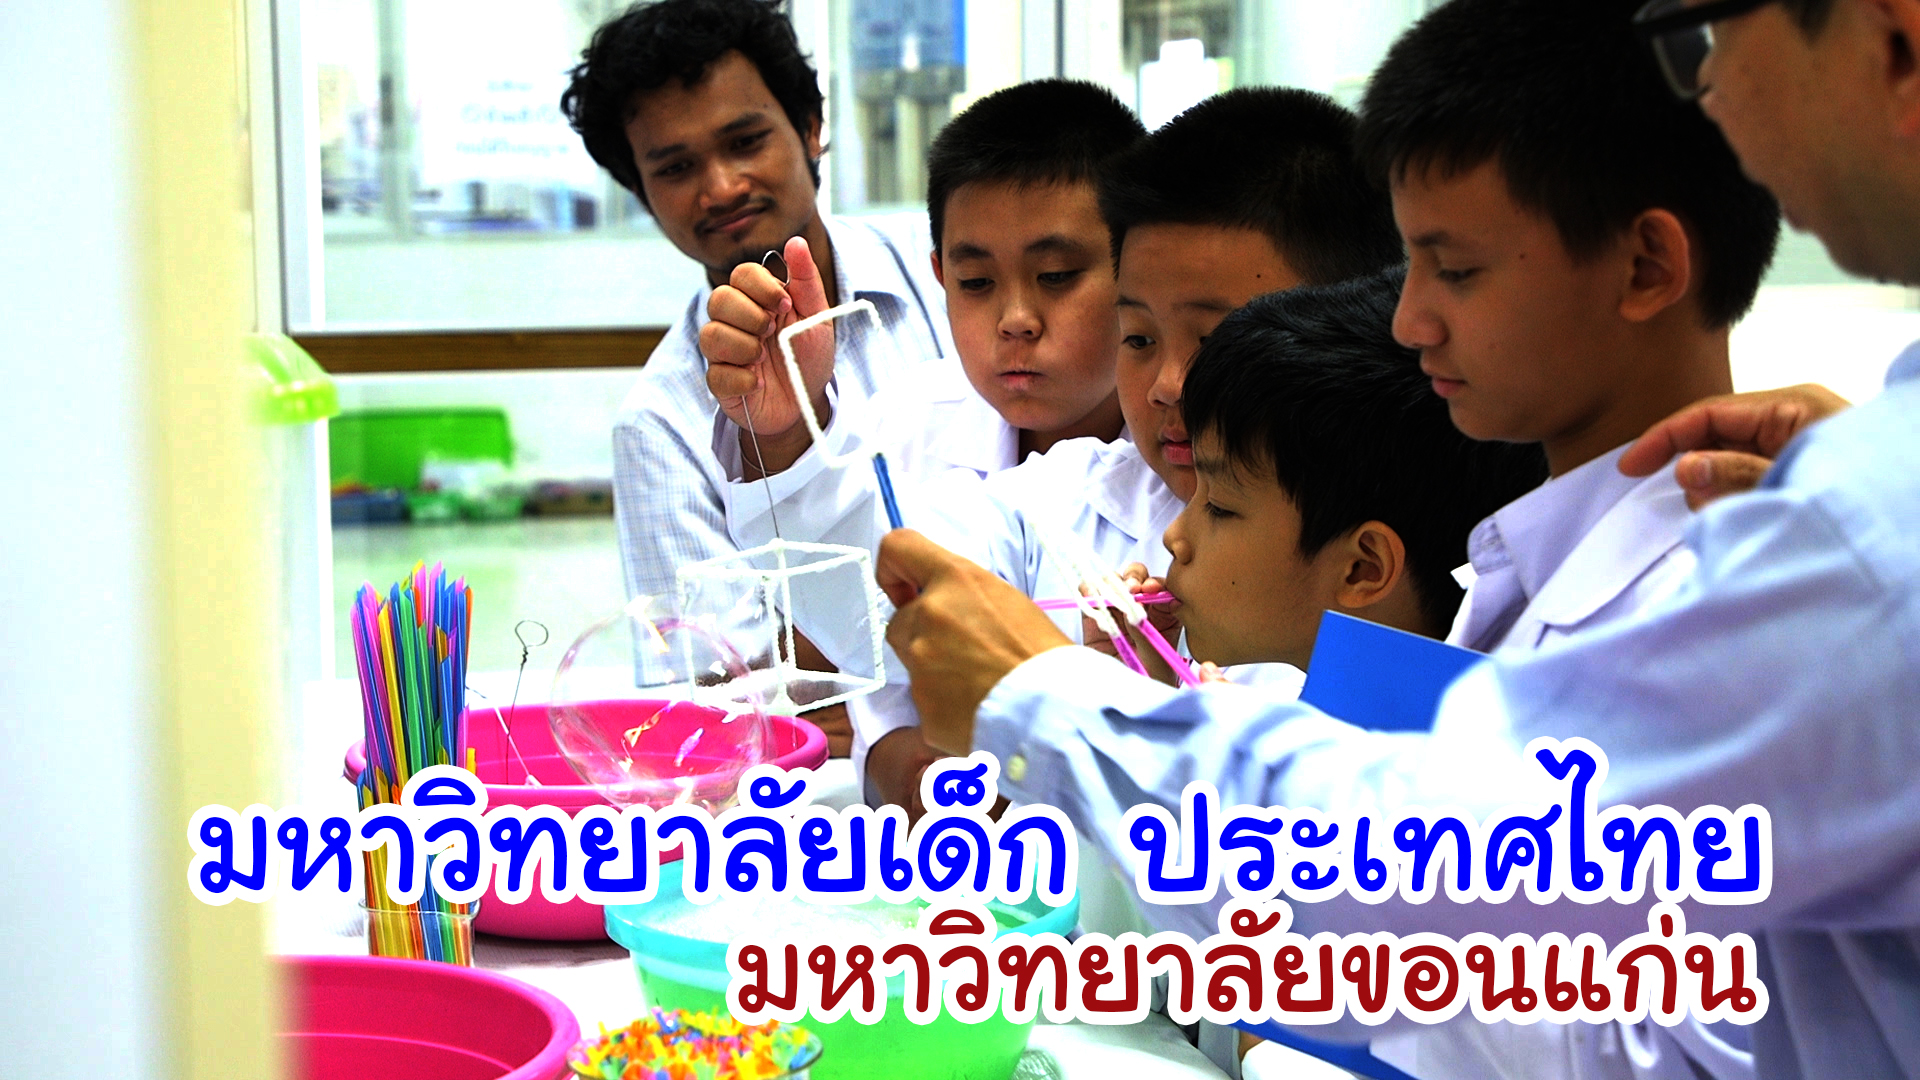 คลิปกิจกรรมมหาวิทยาลัยเด็ก ประเทศไทย มหาวิทยาลัยขอนแก่น